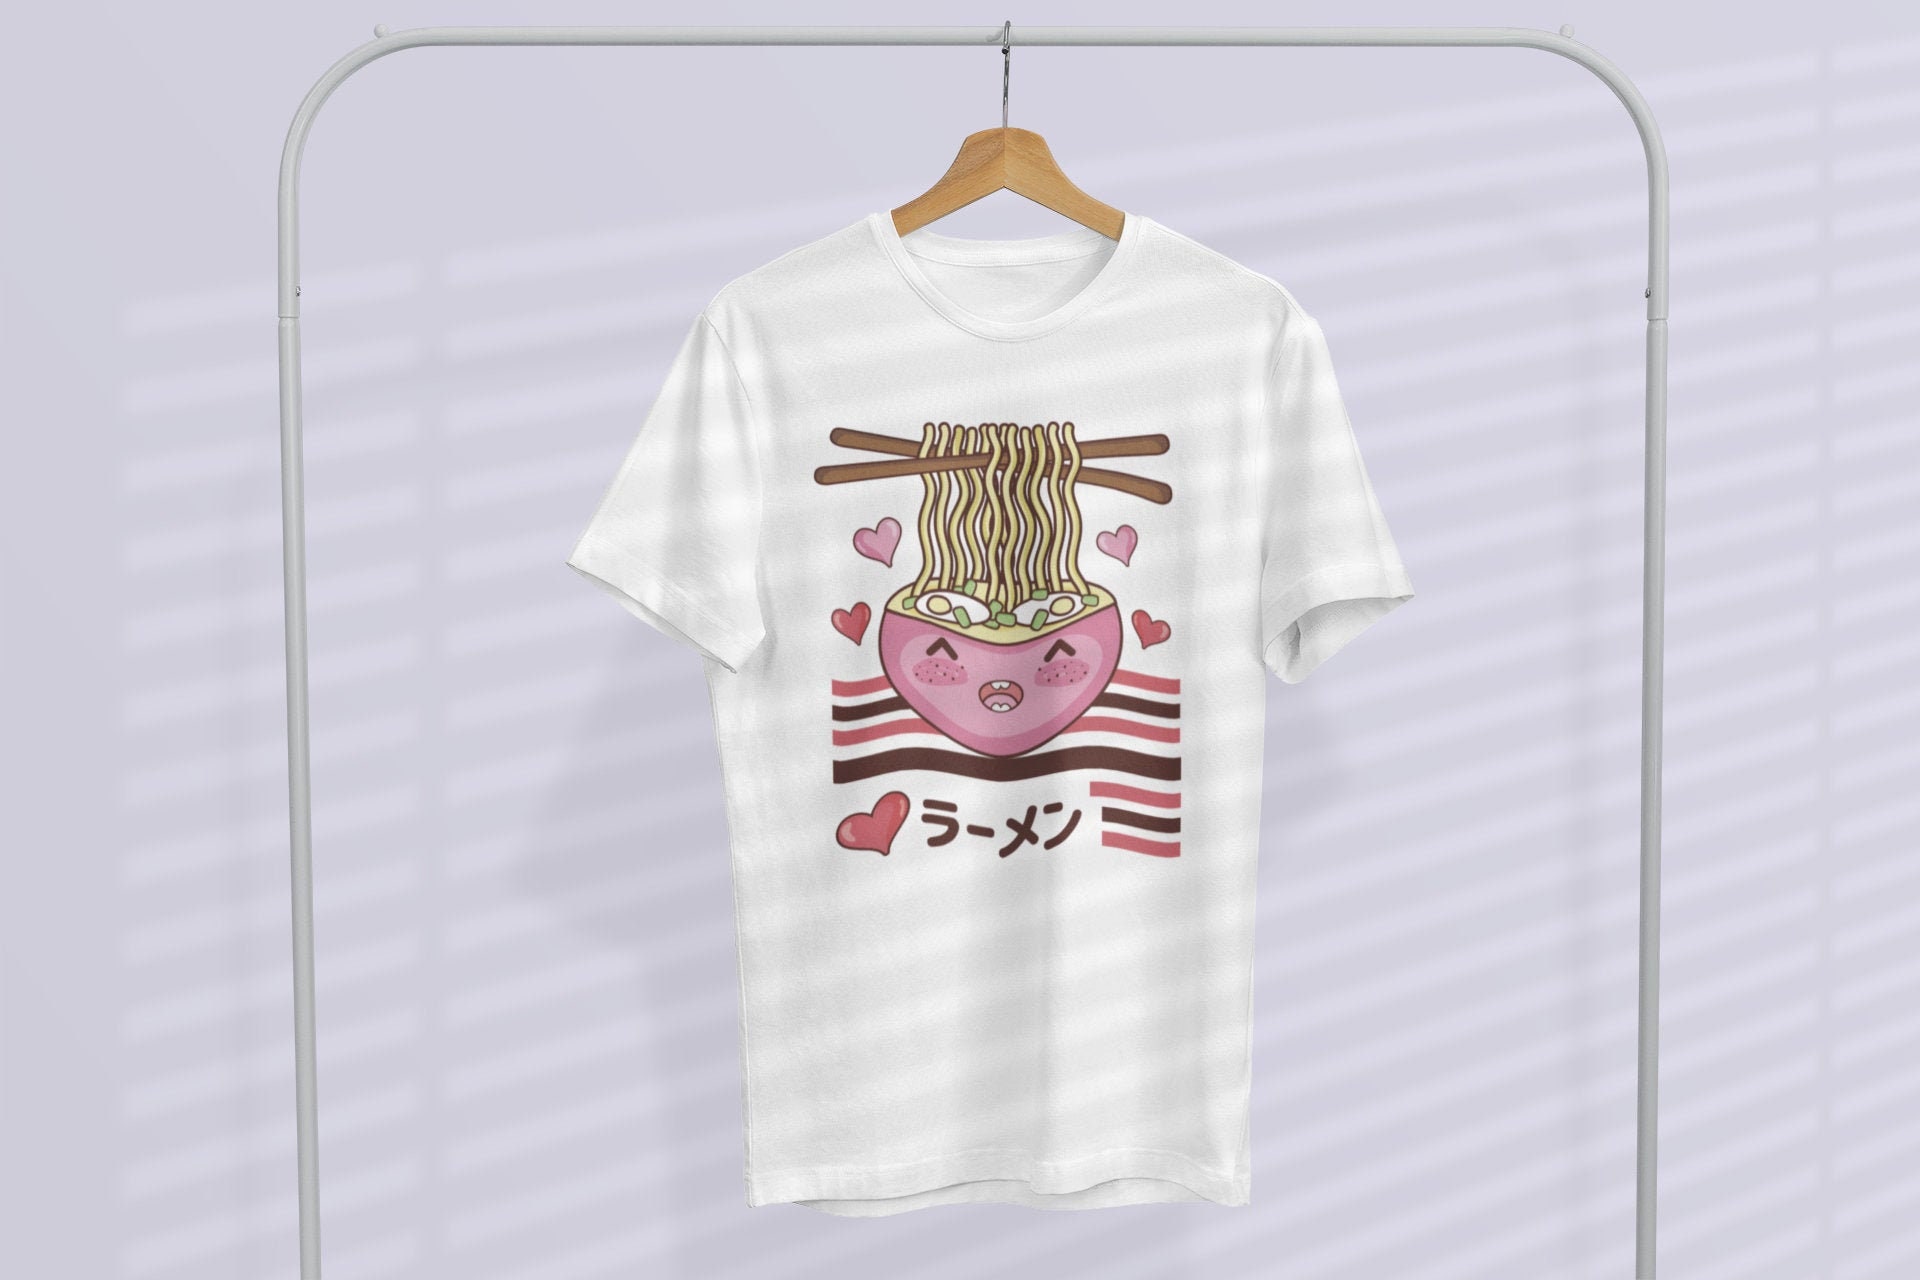 Japanese Ramen Shirt, Ramen, Funny Kawaii T Shirt, Cute, Unisex Jersey Short Sleeve Tee